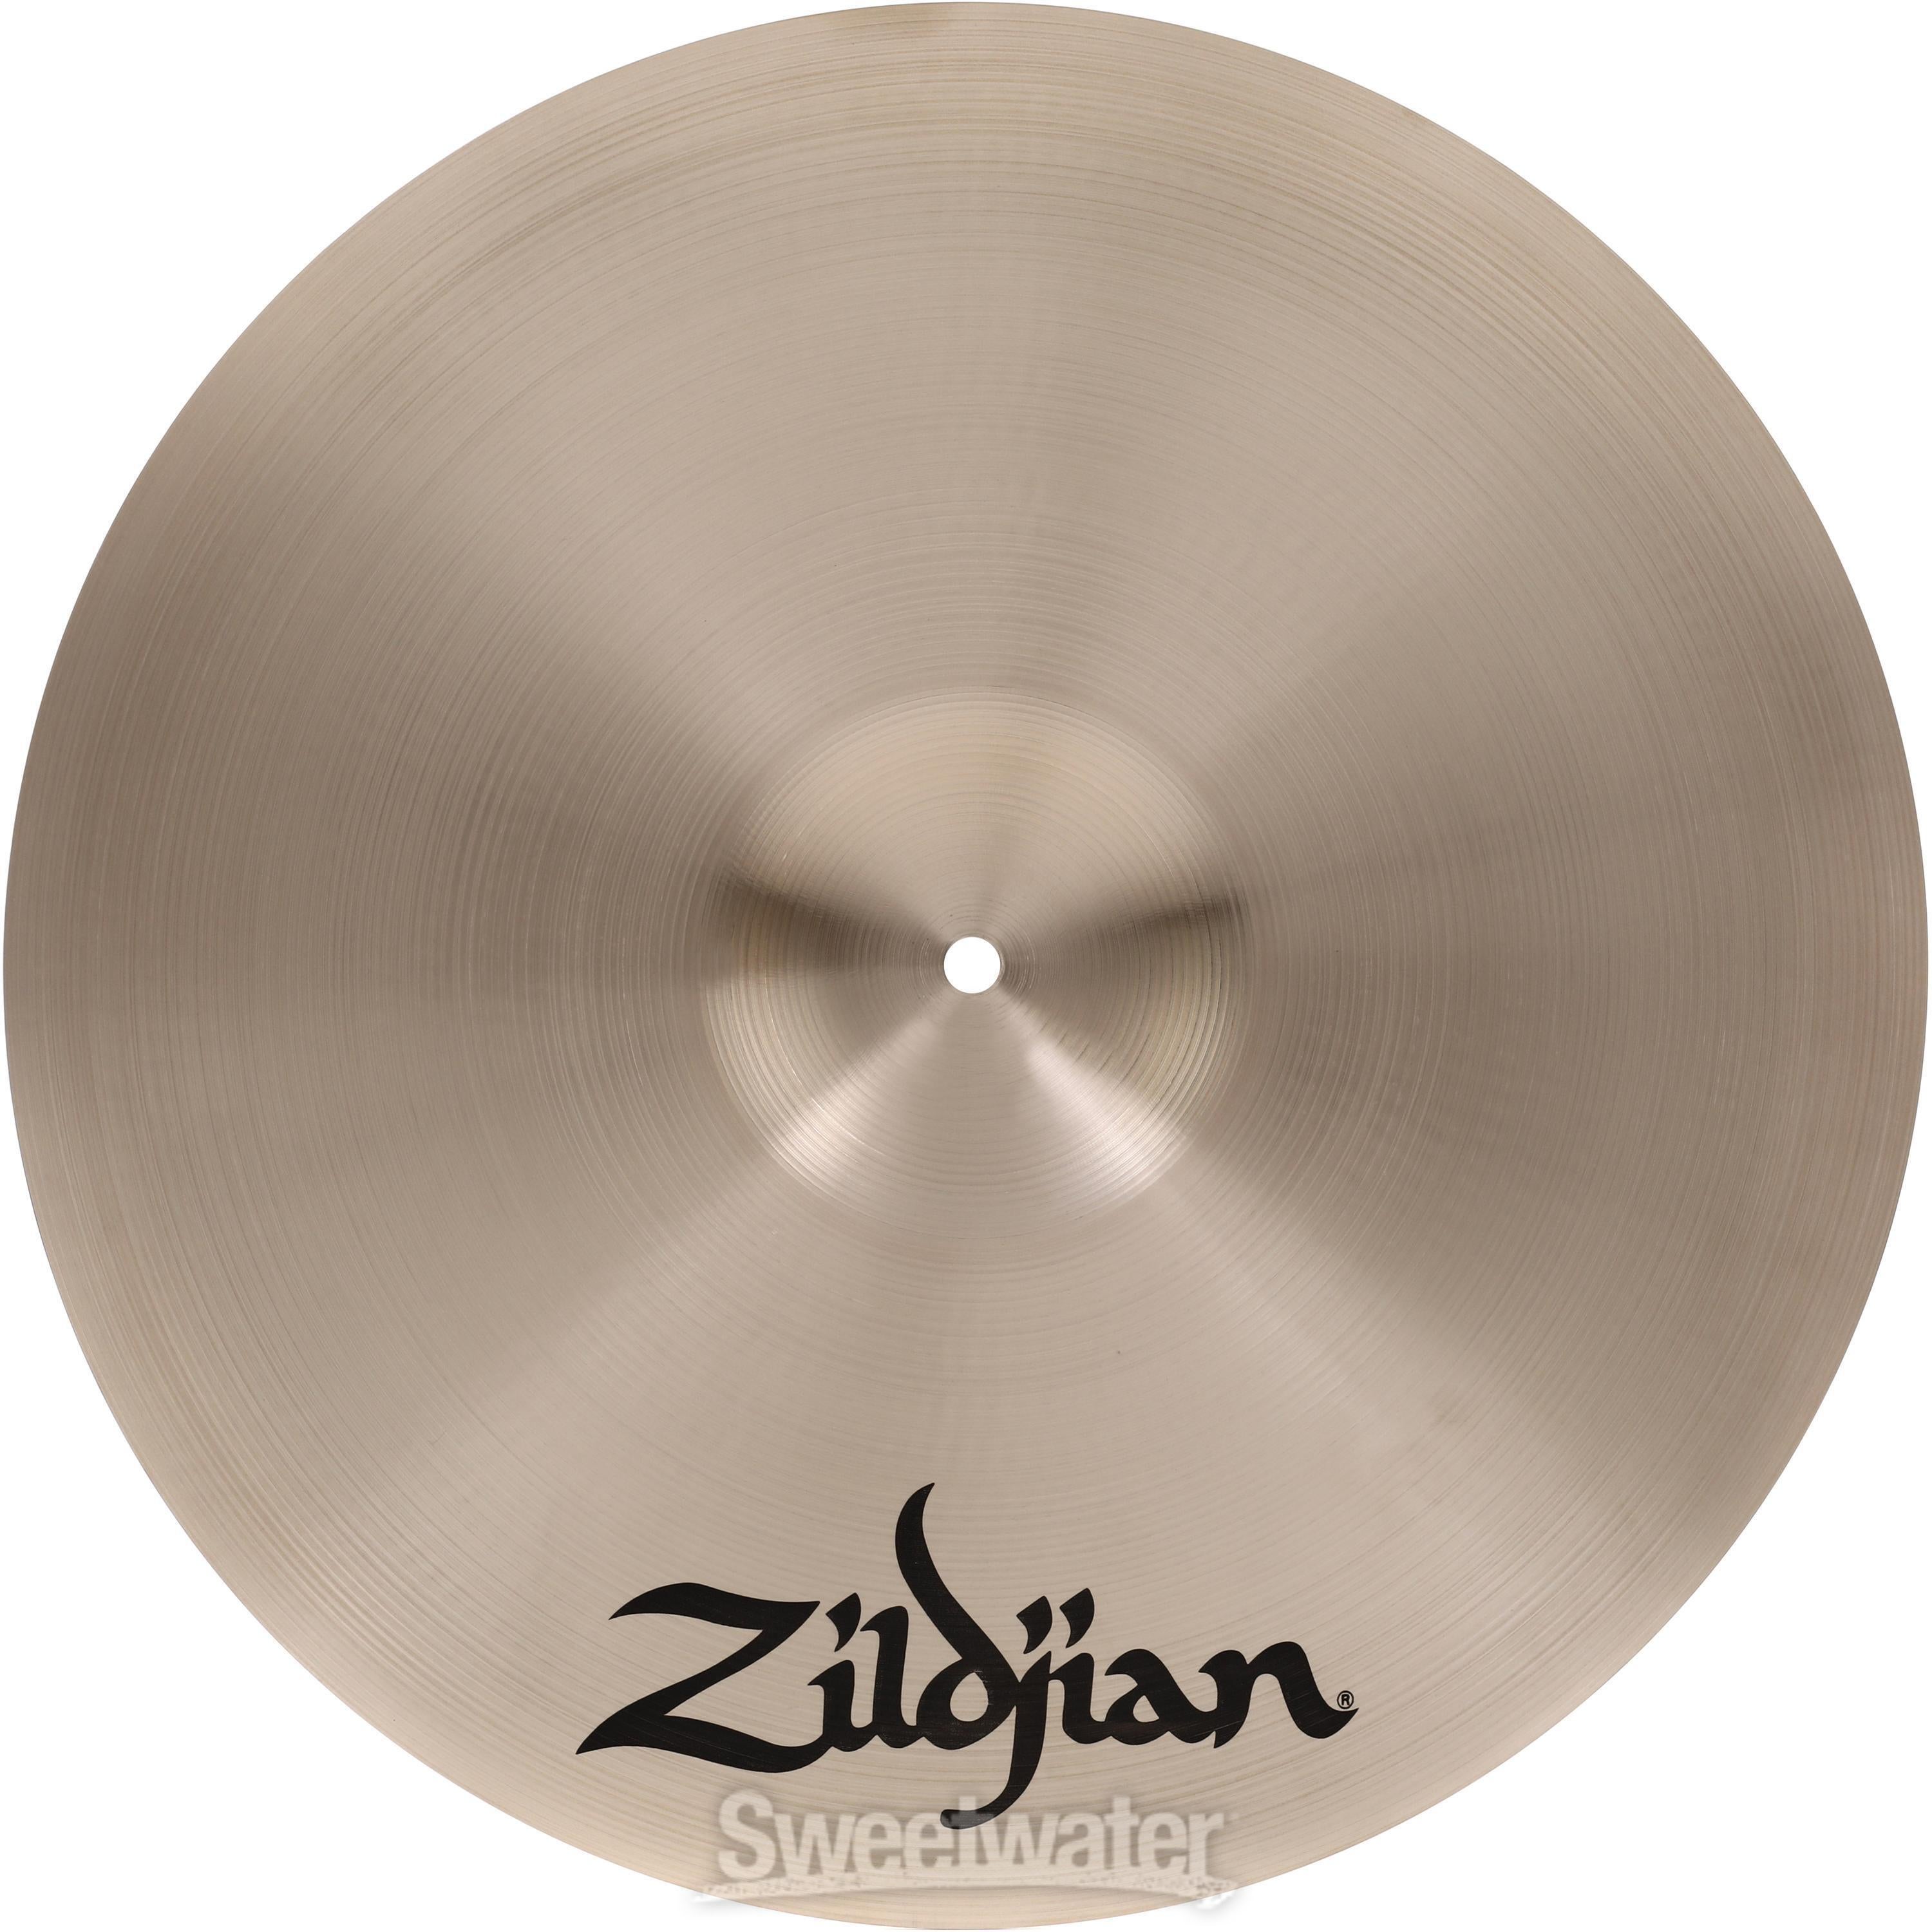 Zildjian 18 inch A Zildjian Medium-thin Crash Cymbal